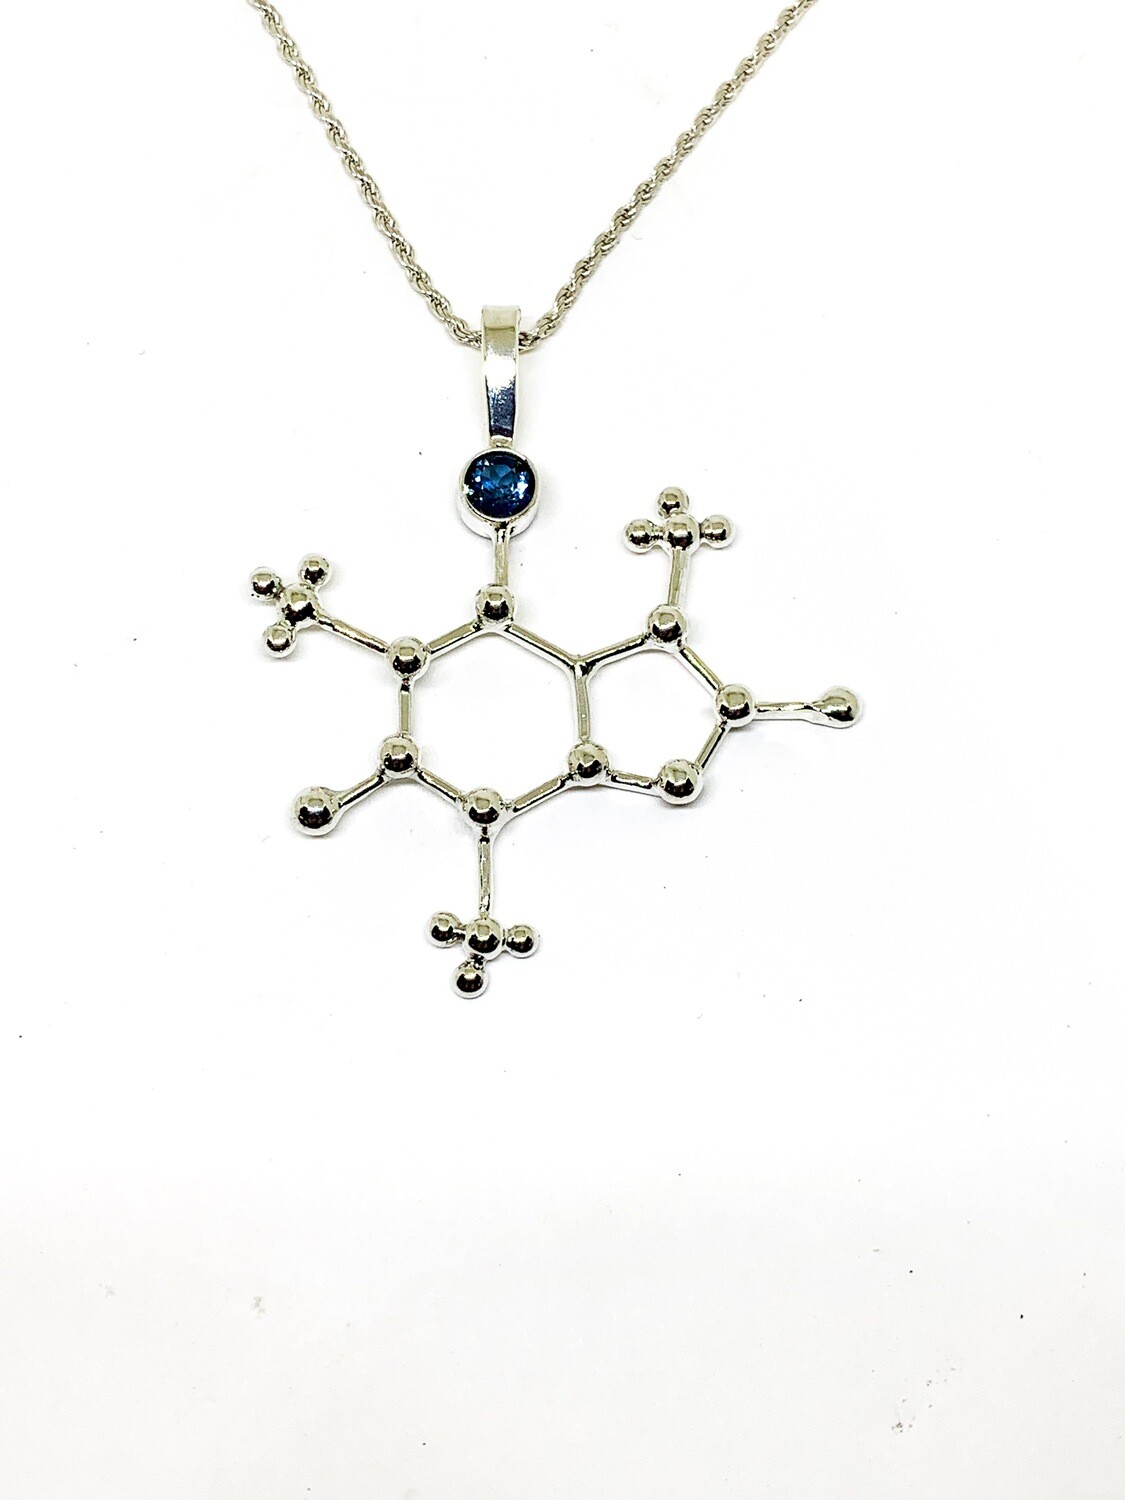 Caffeine Molecule Pendant